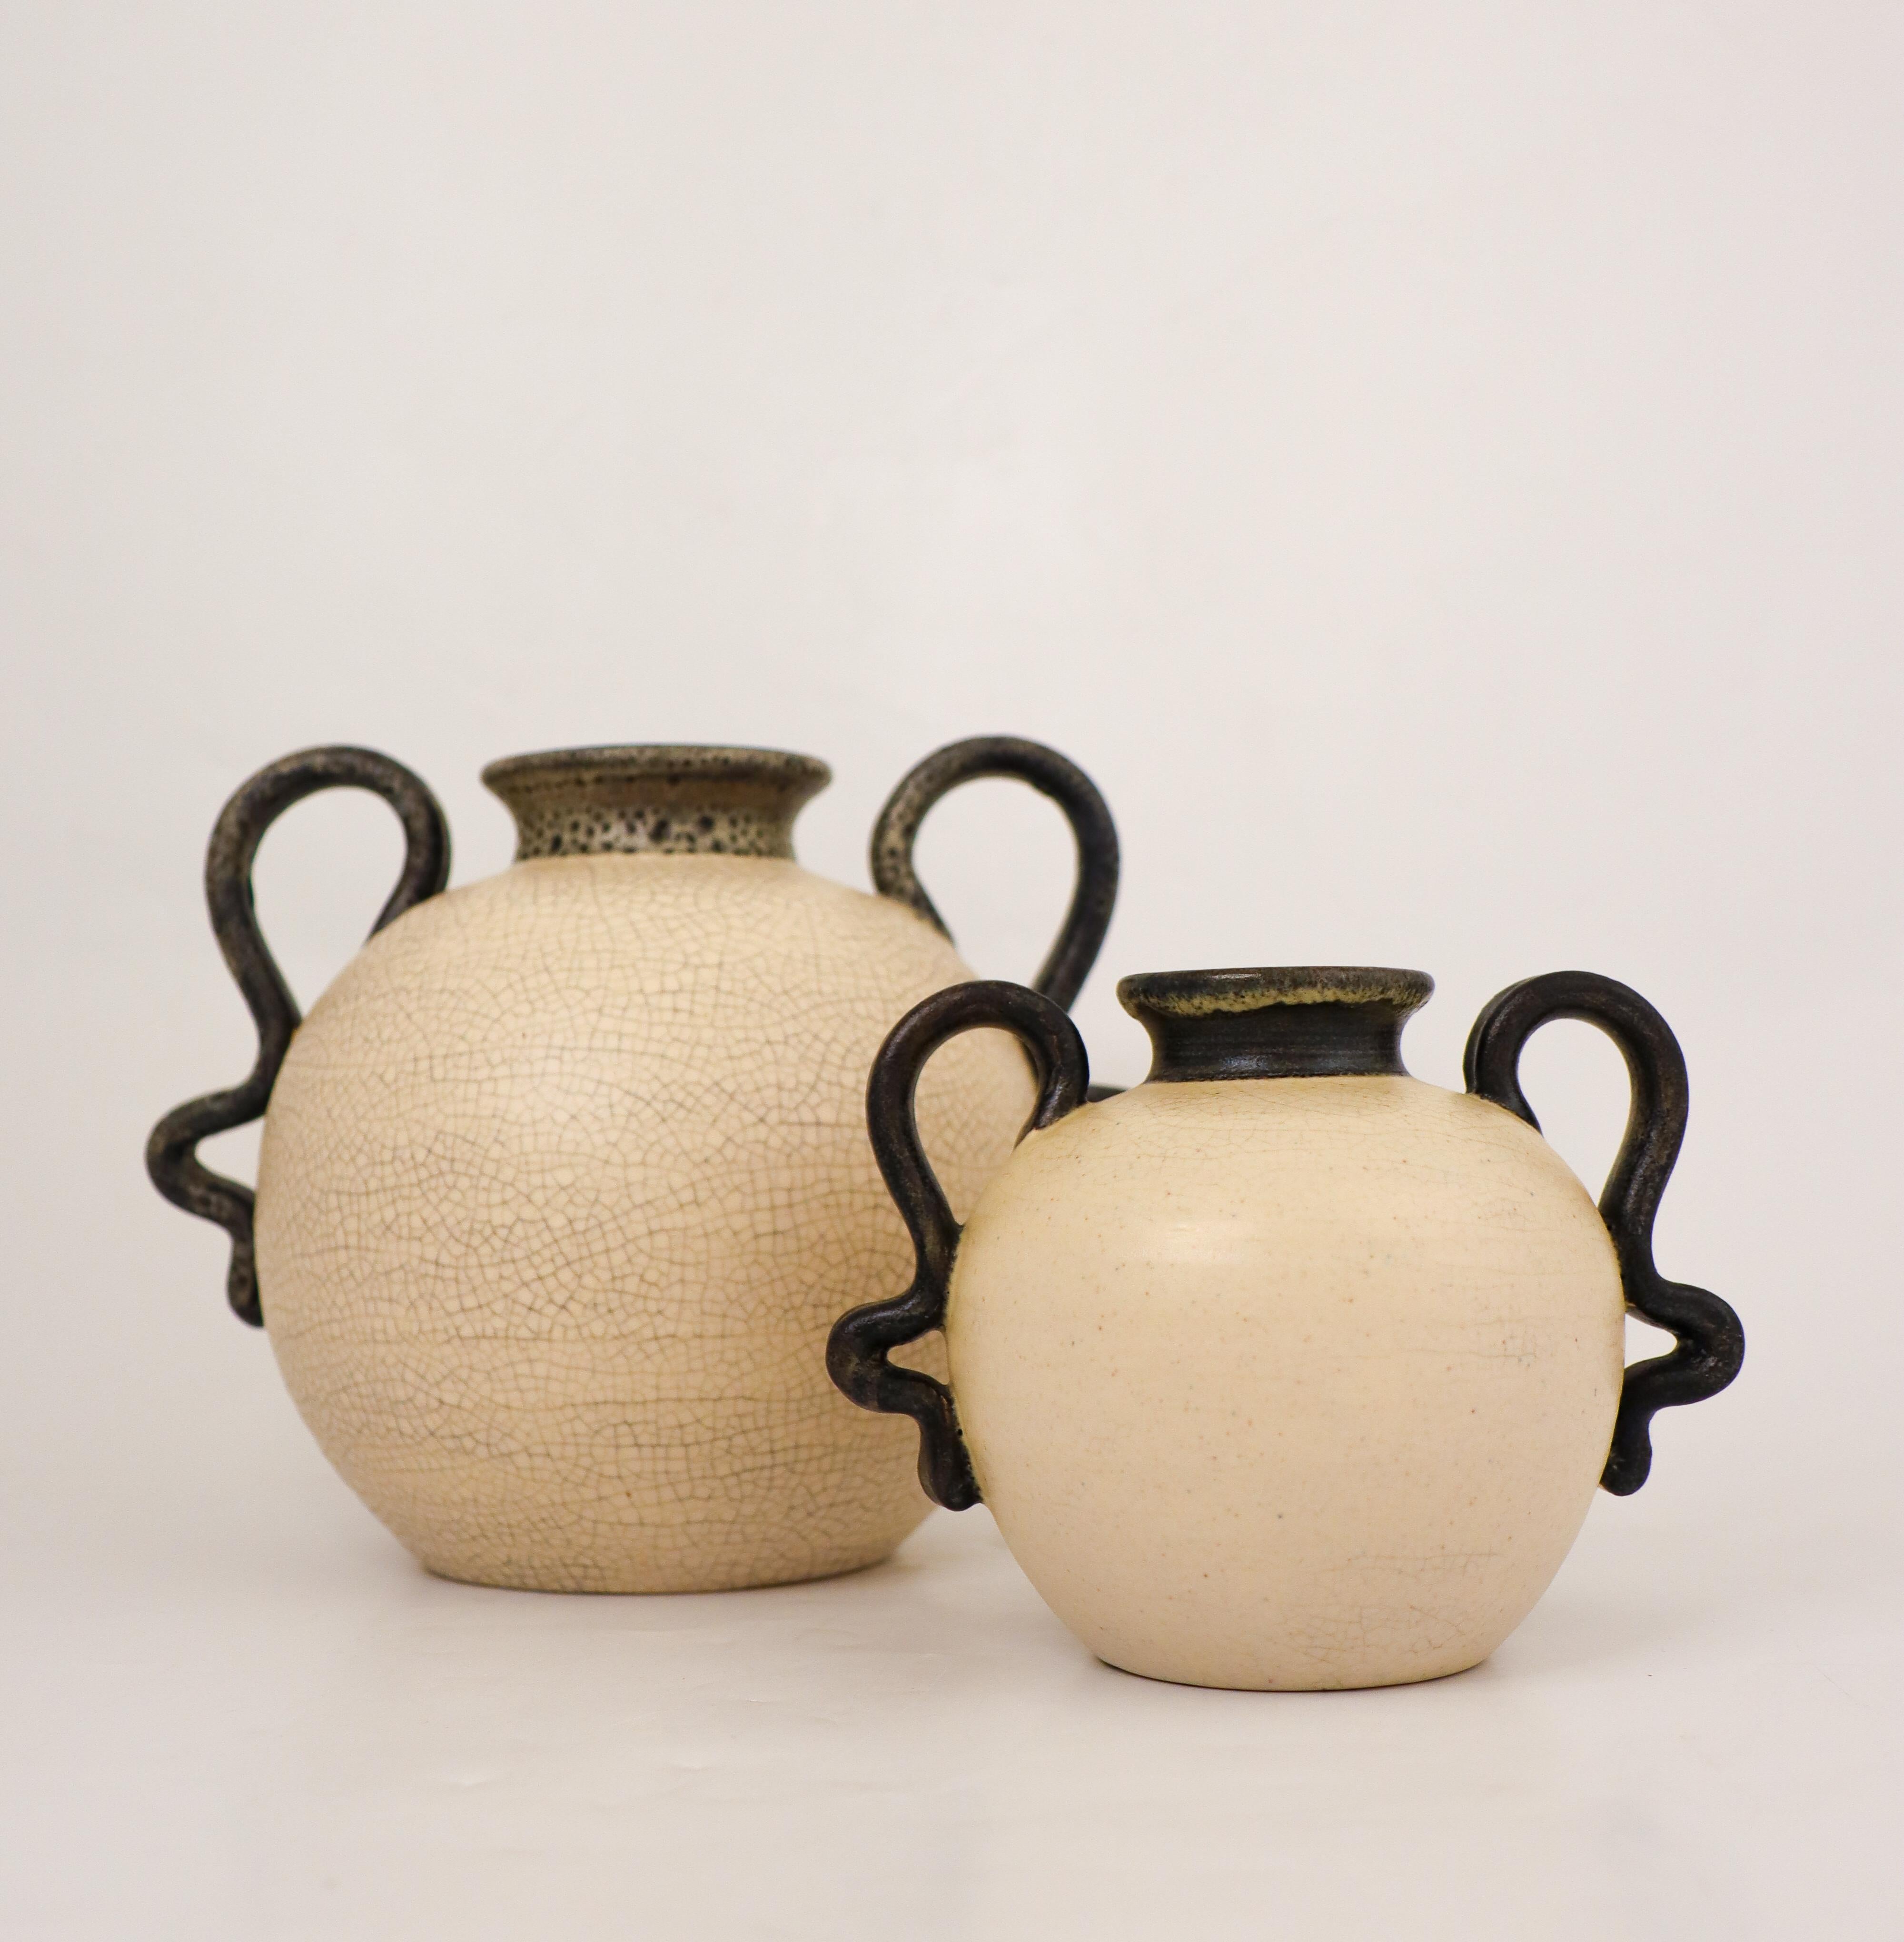 Ein Paar schöne cremefarbene Vasen mit hübschen Henkeln, entworfen von Eva Jancke-Björk bei Bo Fajans in Gefle in den 1940er Jahren. Das größte Exemplar ist 16,5 cm hoch und hat einen Durchmesser von 20 cm, das kleinere ist 11 cm hoch und hat einen